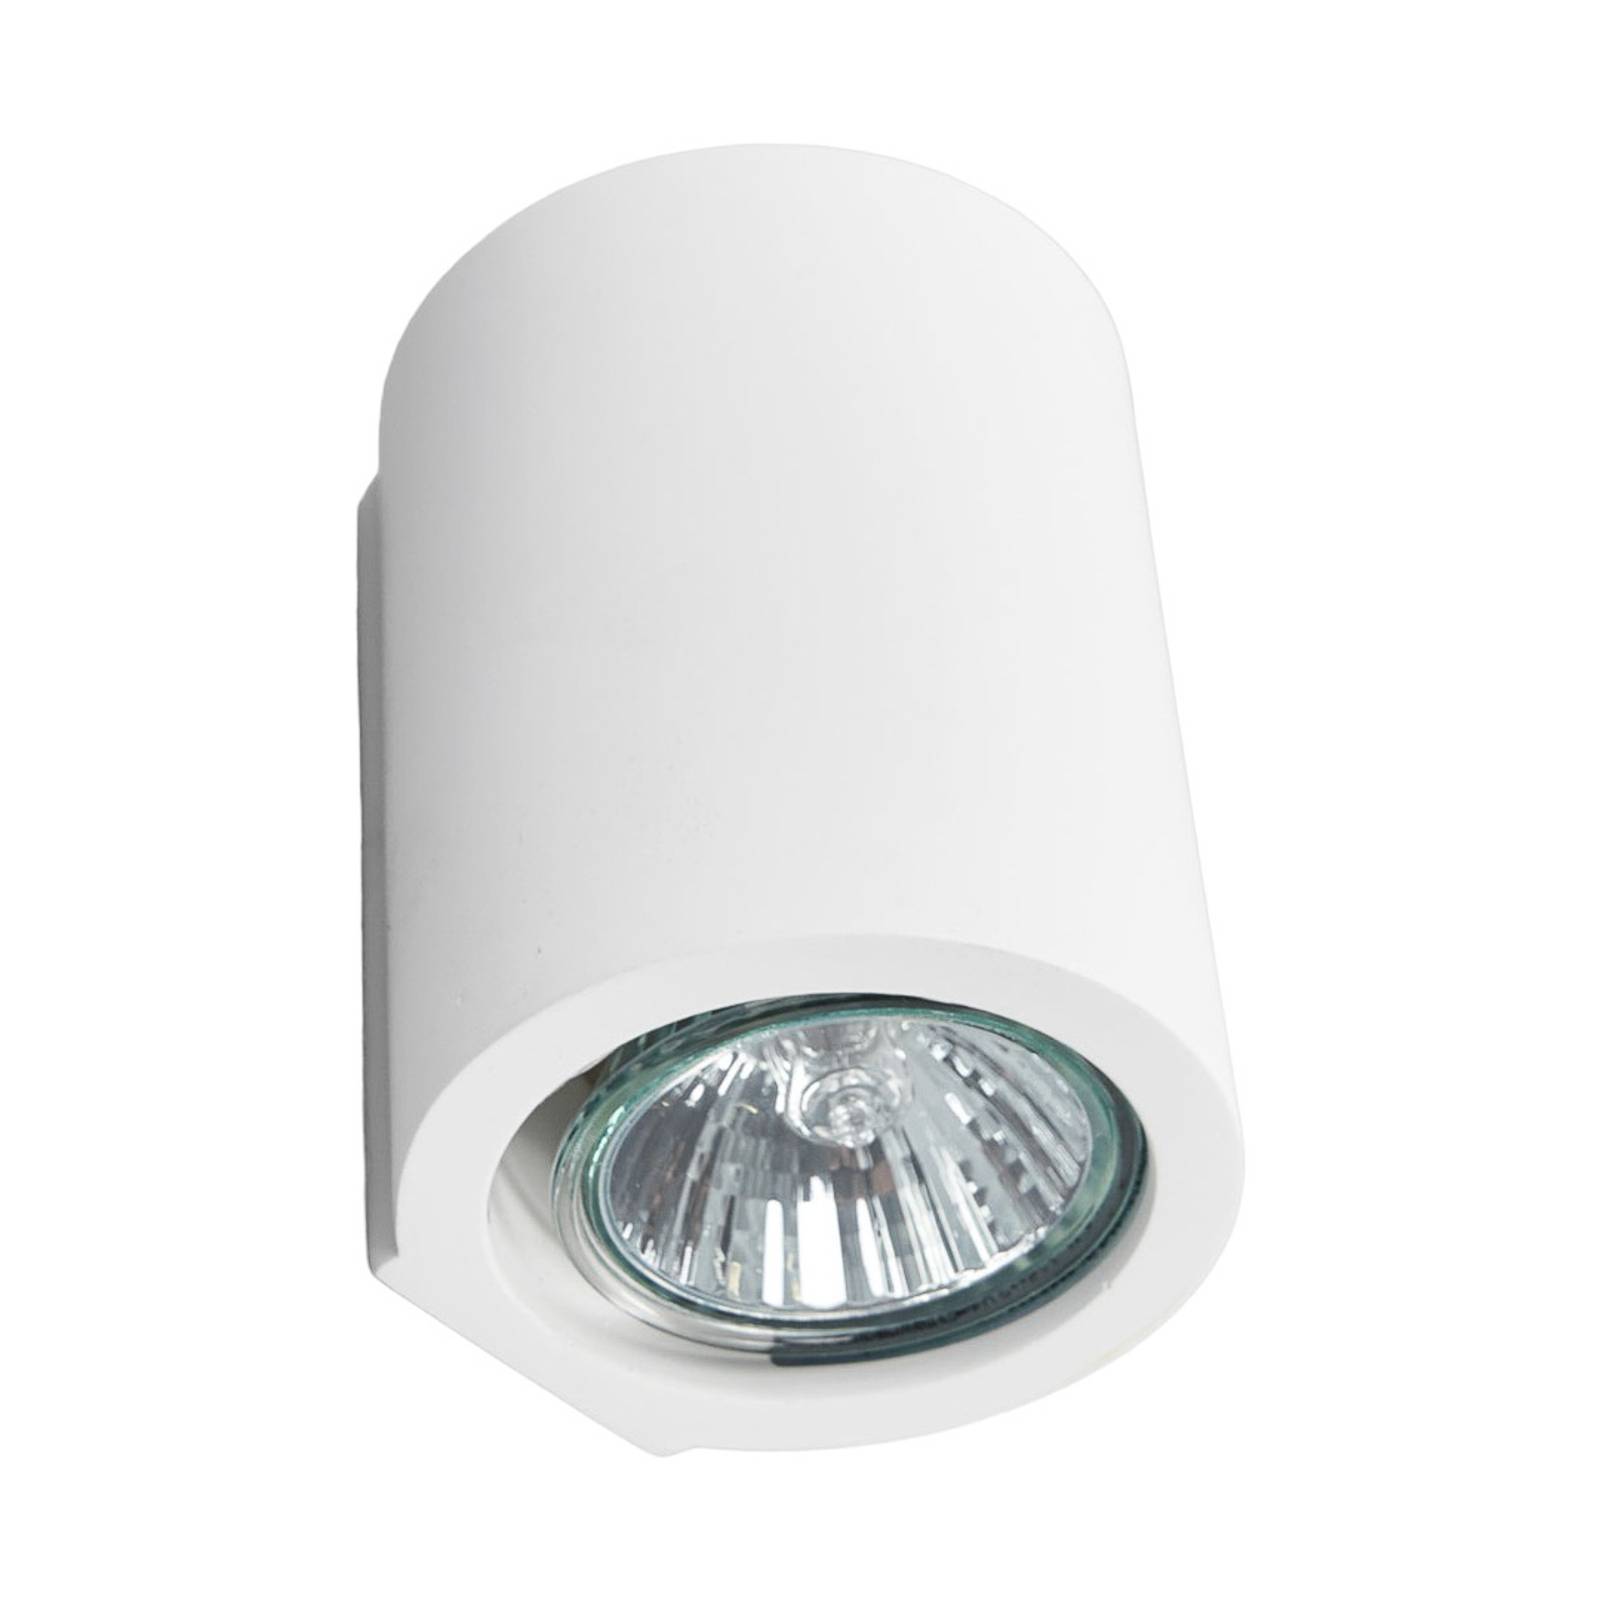 Miroslaw fehér GU10 fali lámpa gipszből